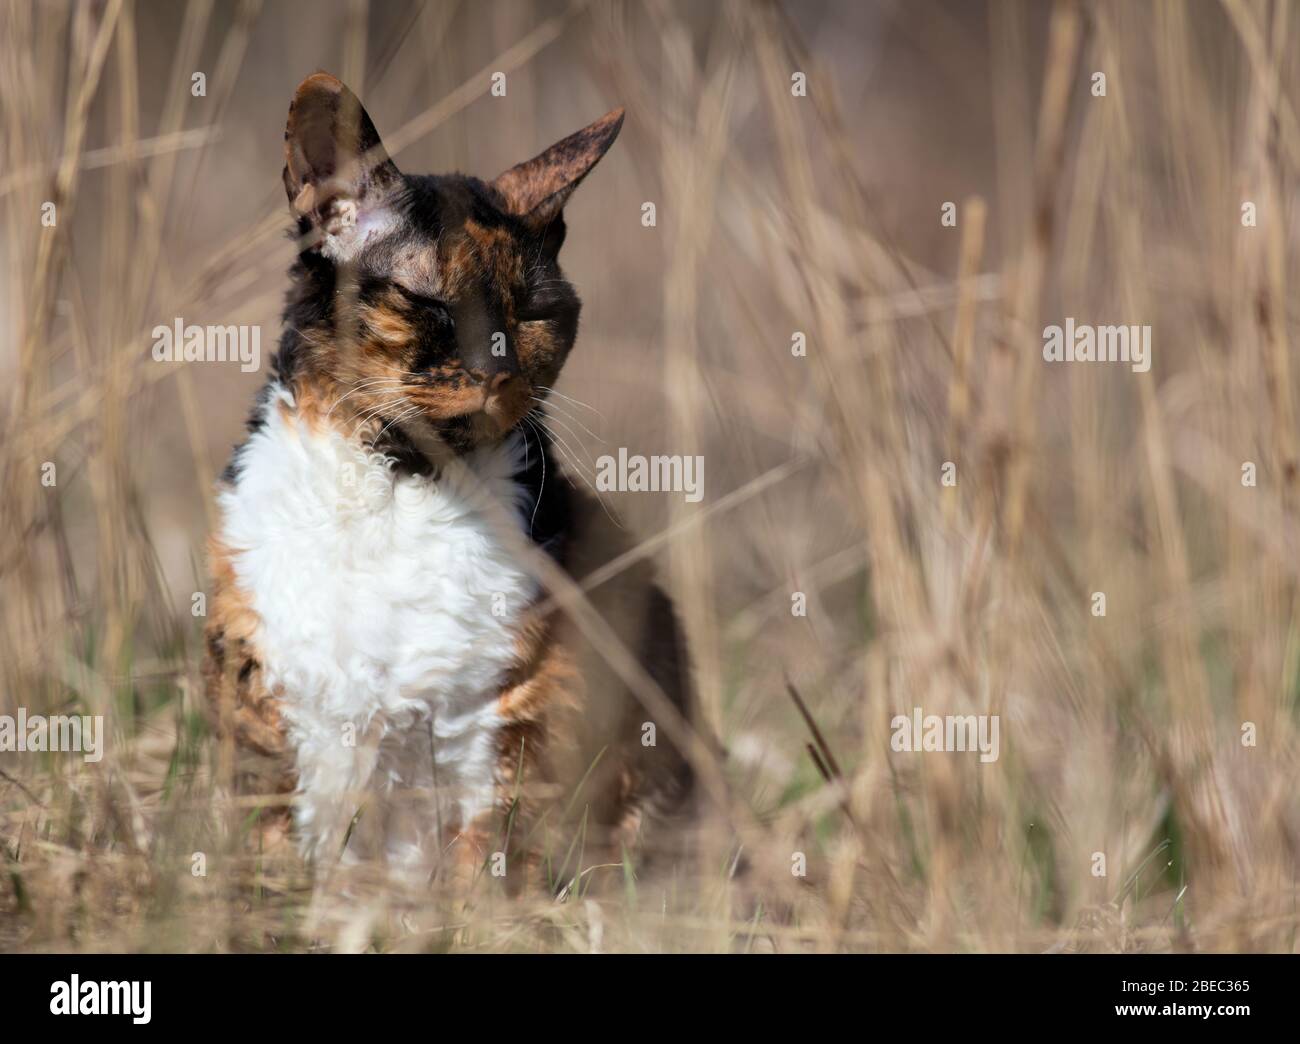 Cornish Rexa gato tranquilamente parpadeando, sentado en la hierba Foto de stock